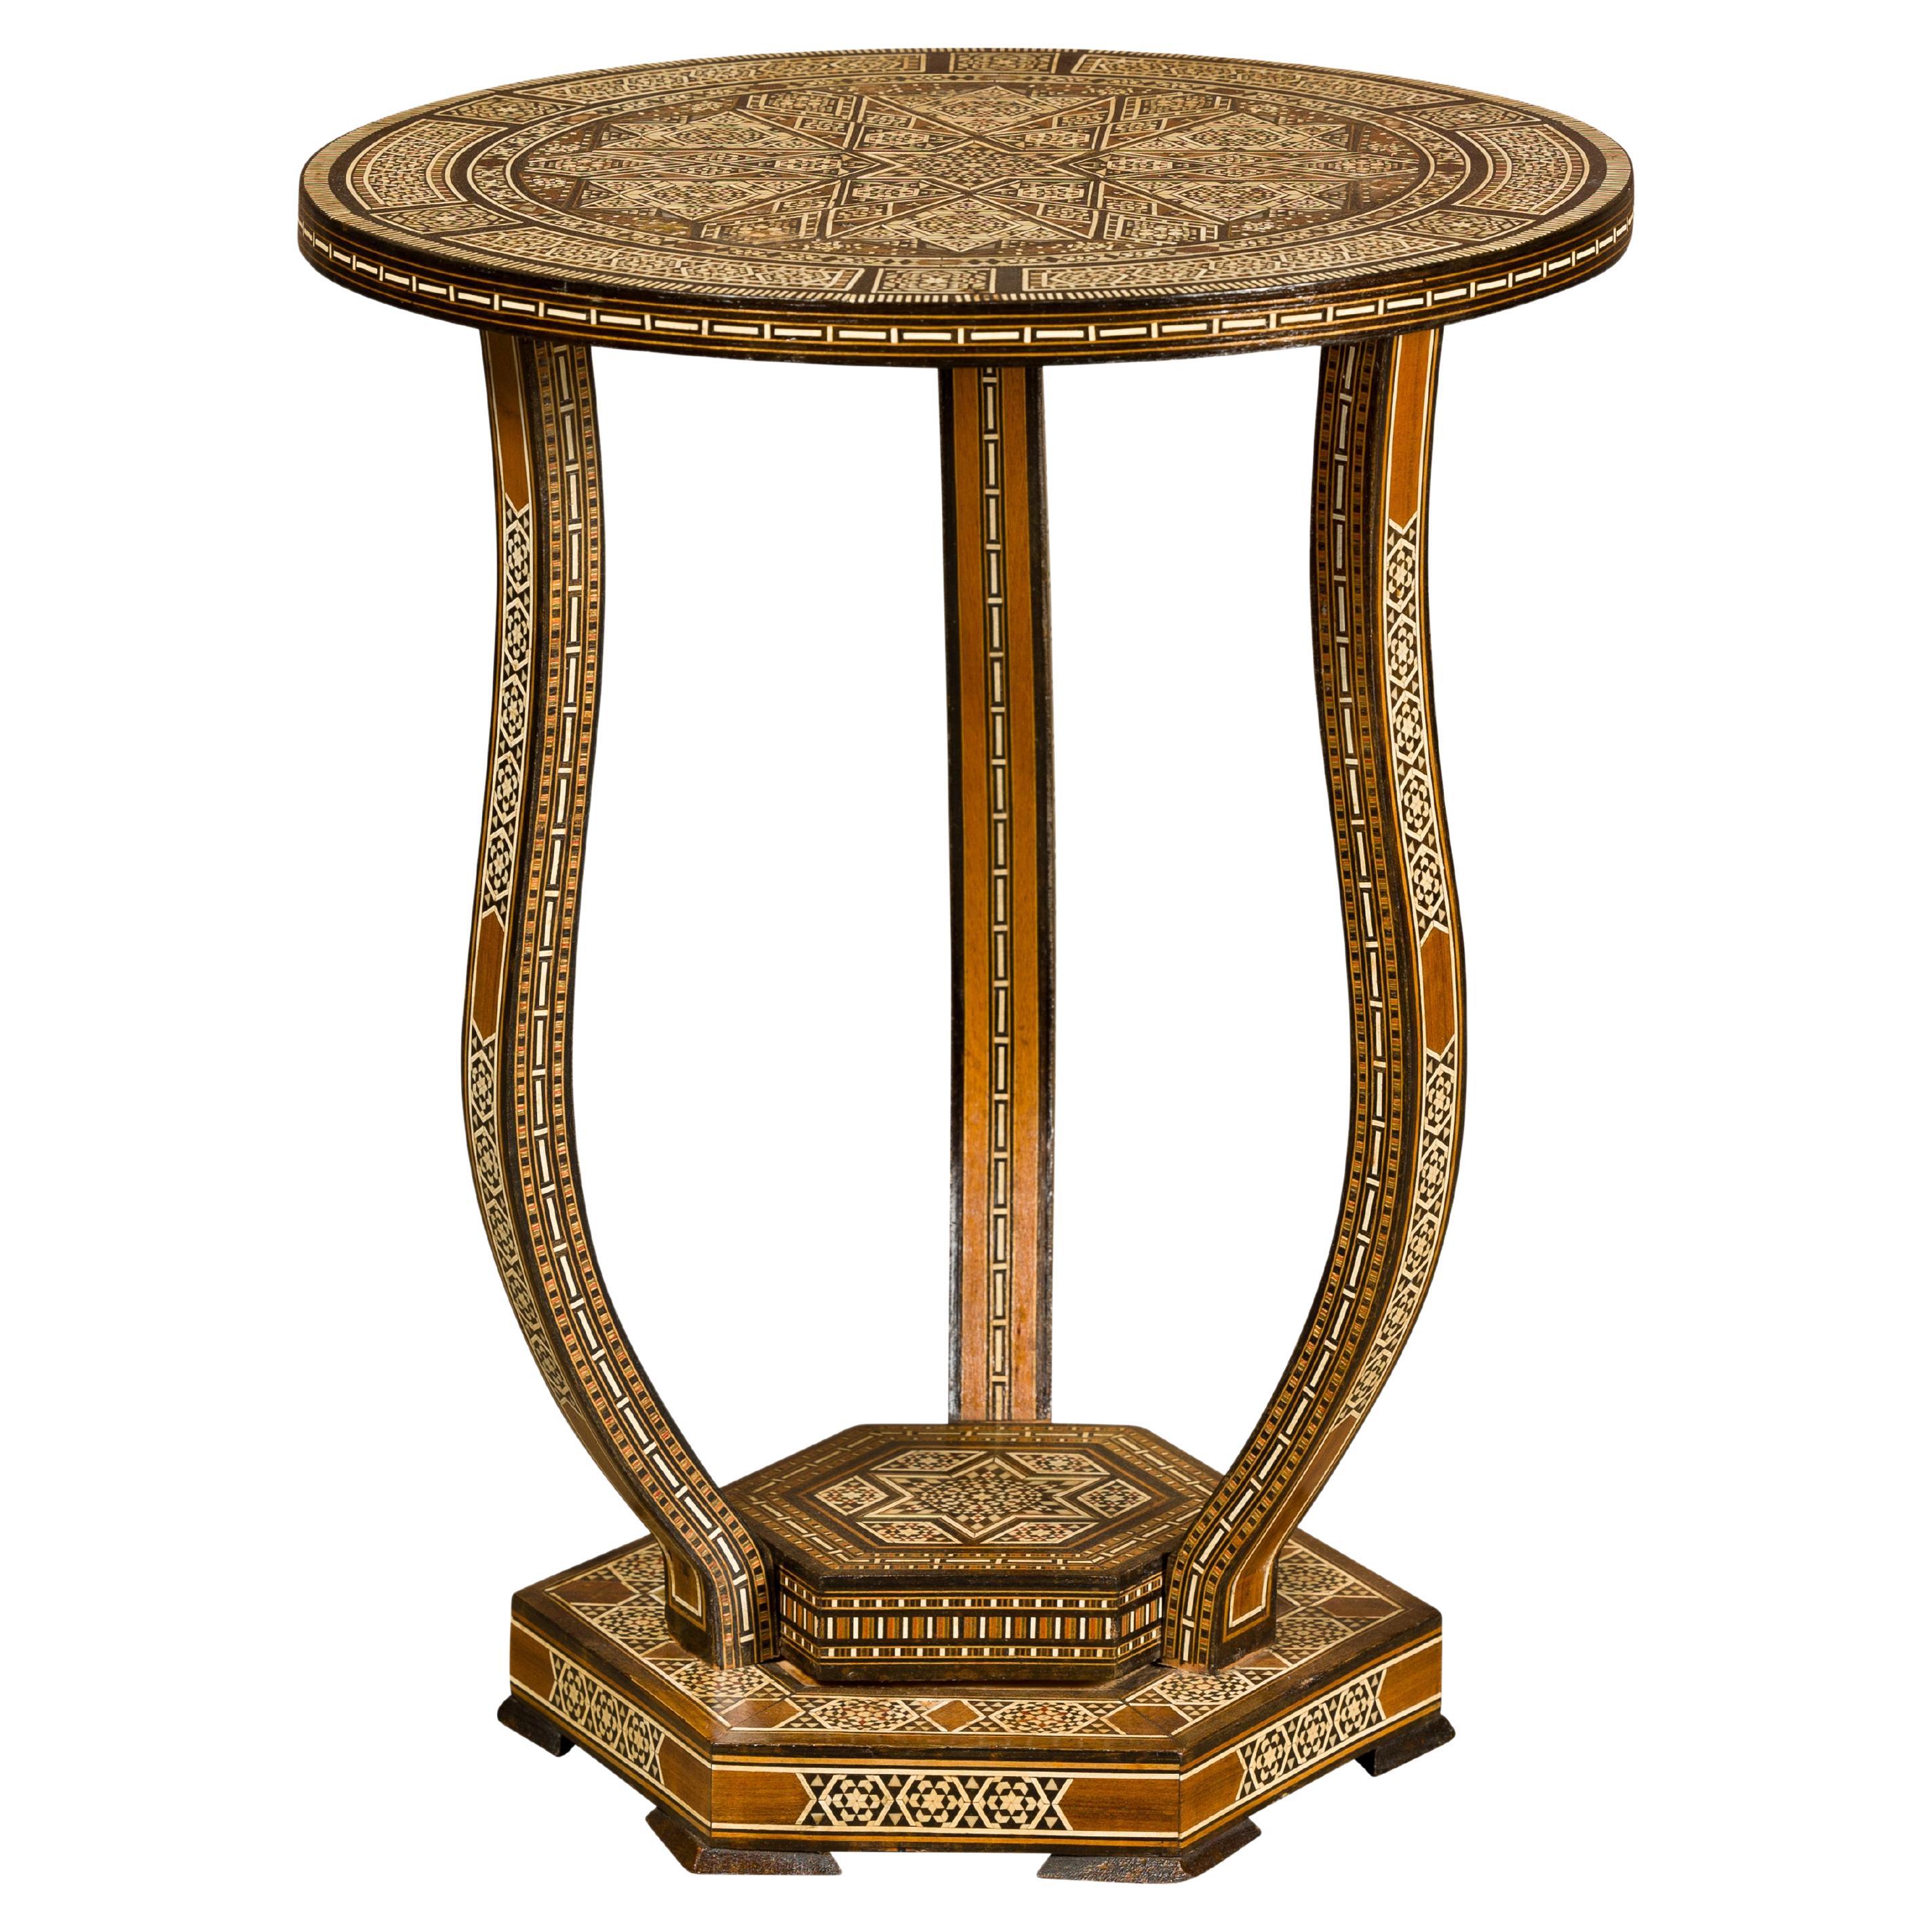 Marokkanischer niedriger Tisch im maurischen Stil um 1900 mit runder Platte und geometrischer Knochenintarsie